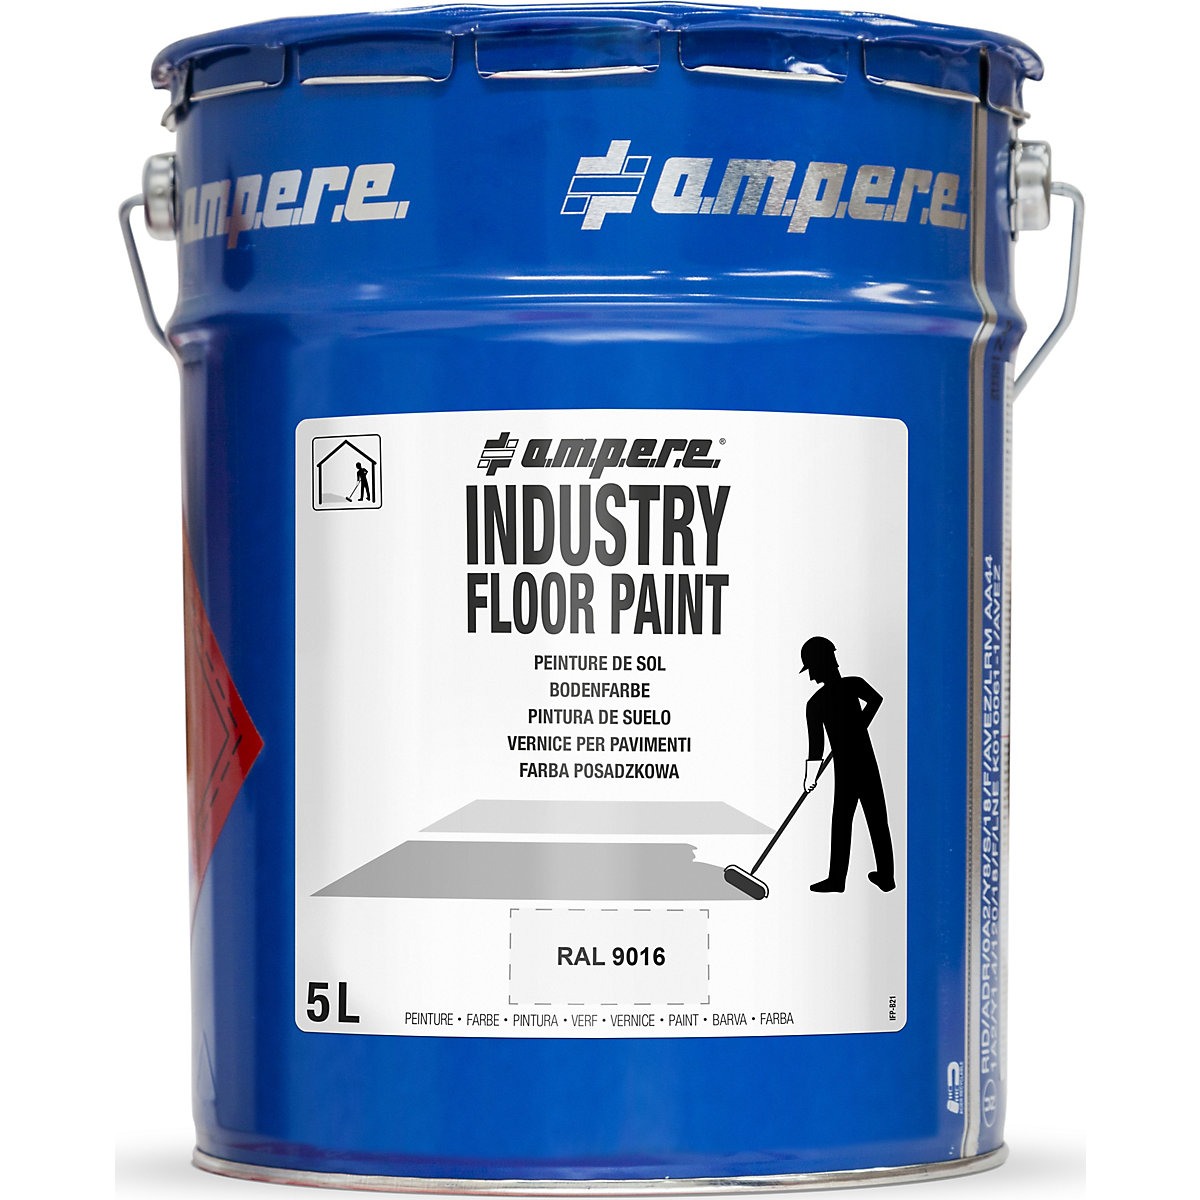 Farba do znakowania podłoża Industry Floor Paint® – Ampere, poj. 5 l, biała-3